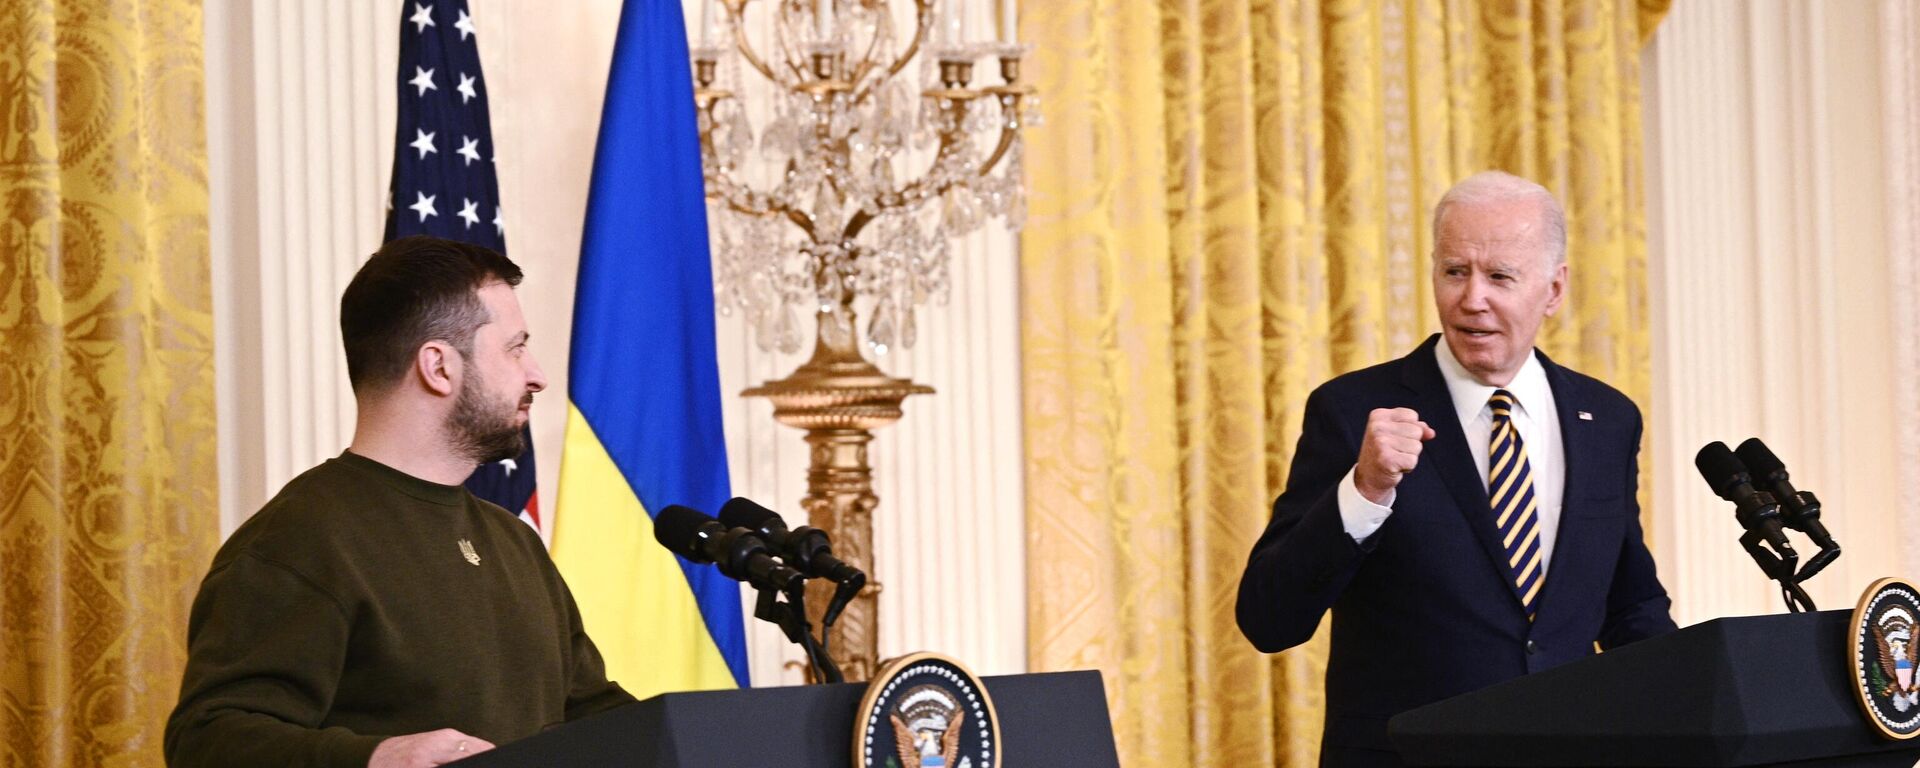 El presidente de EEUU, Joe Biden, con su homólogo de Ucrania, Volodímir Zelenski, en conferencia de prensa el 21 de diciembre de 2022 - Sputnik Mundo, 1920, 15.02.2023